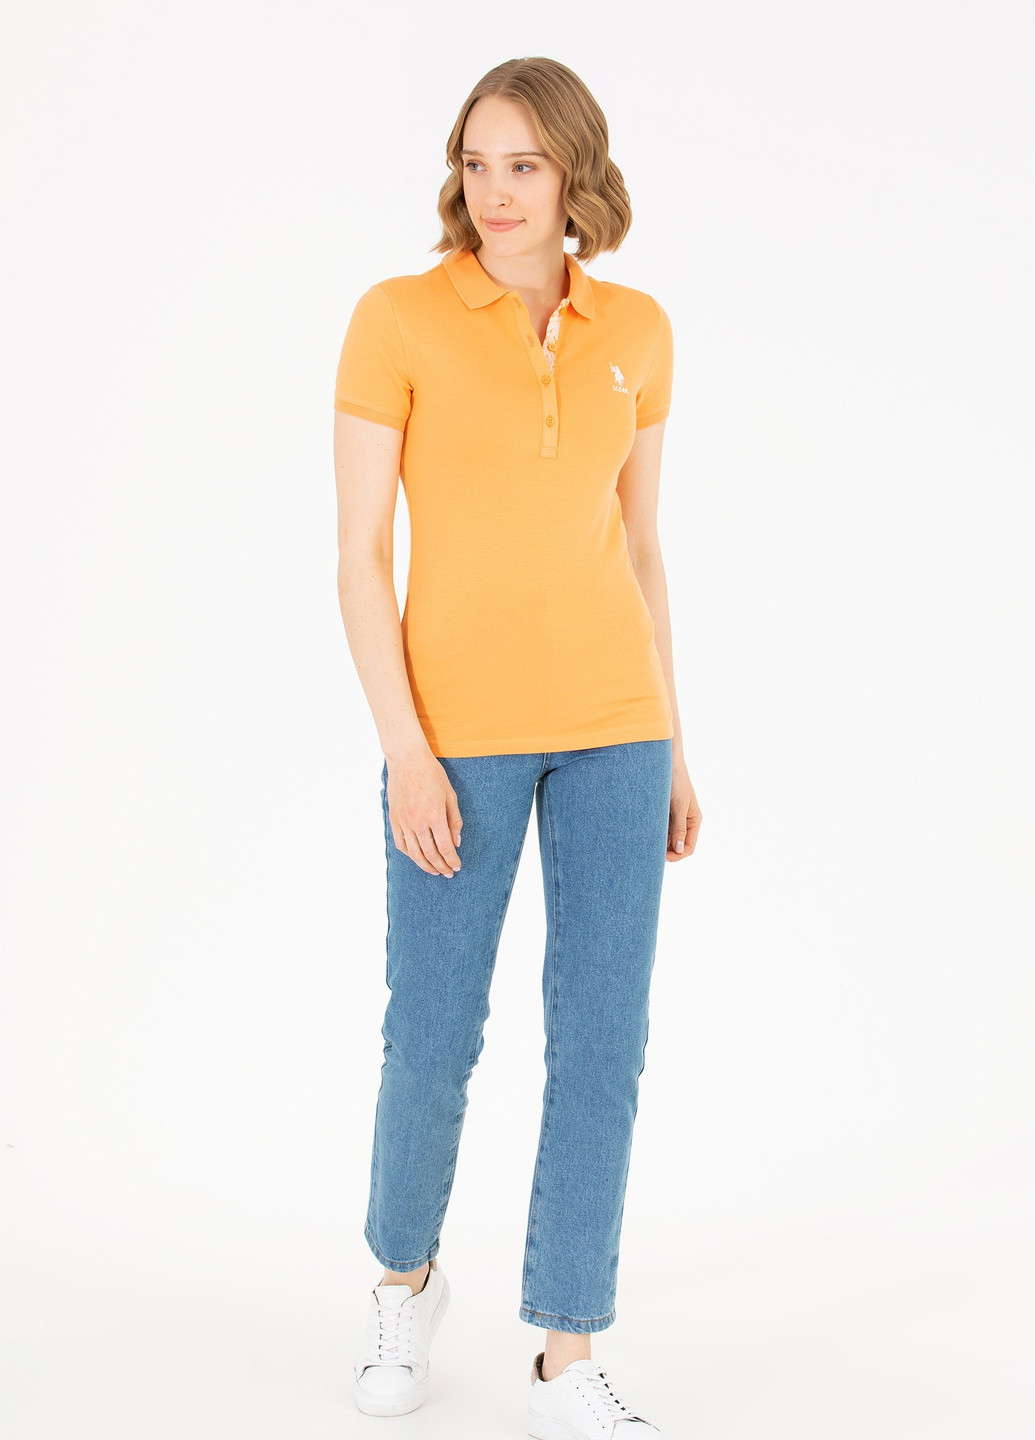 Оранжевая женская футболка-футболка u.s.polo assn женская U.S. Polo Assn.